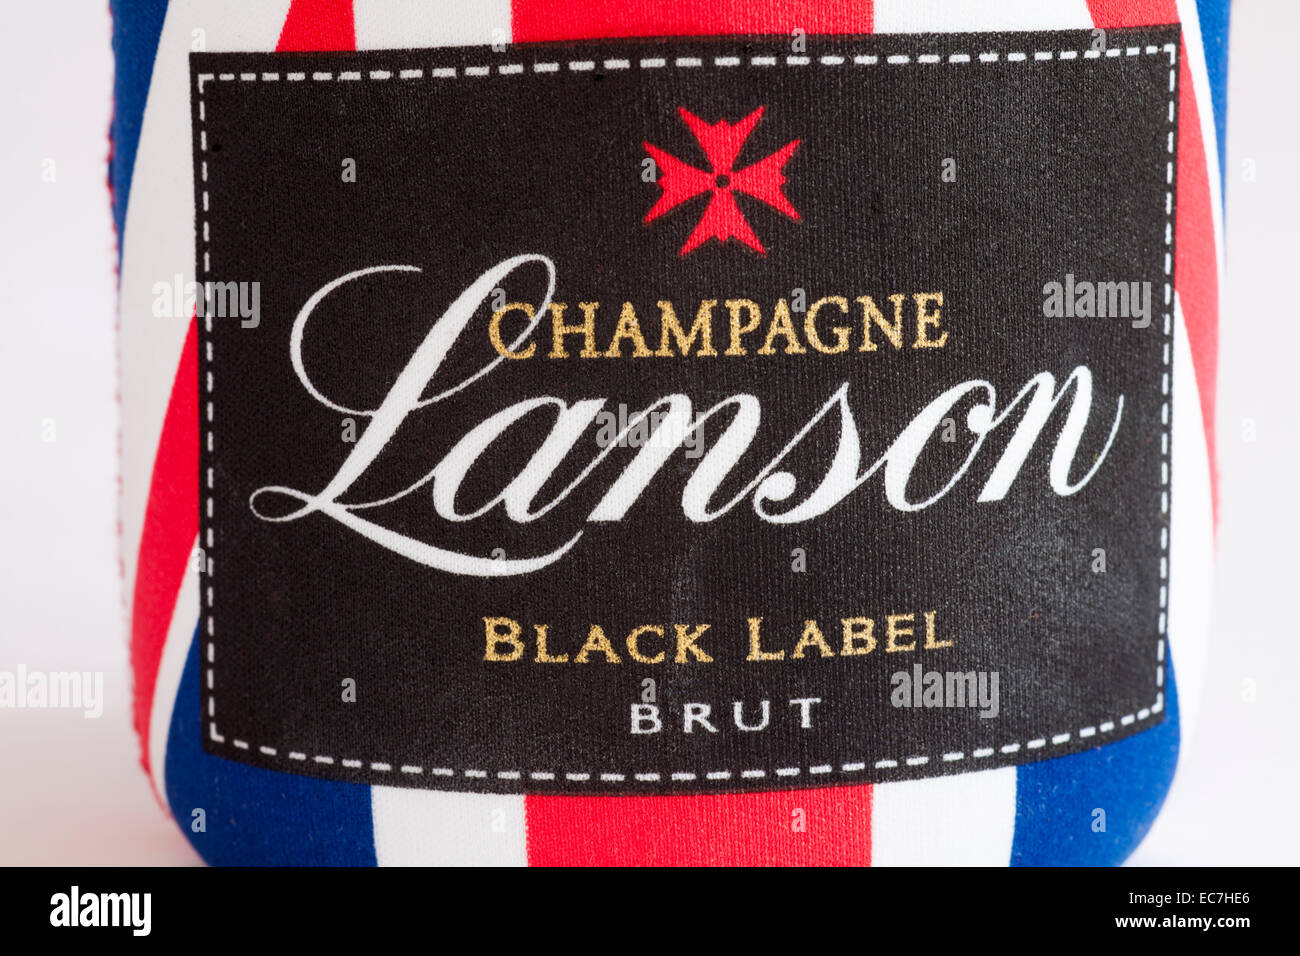 Etikett auf Flasche Champagner Lanson Black Label Brut mit Union Jack-Hülle Stockfoto